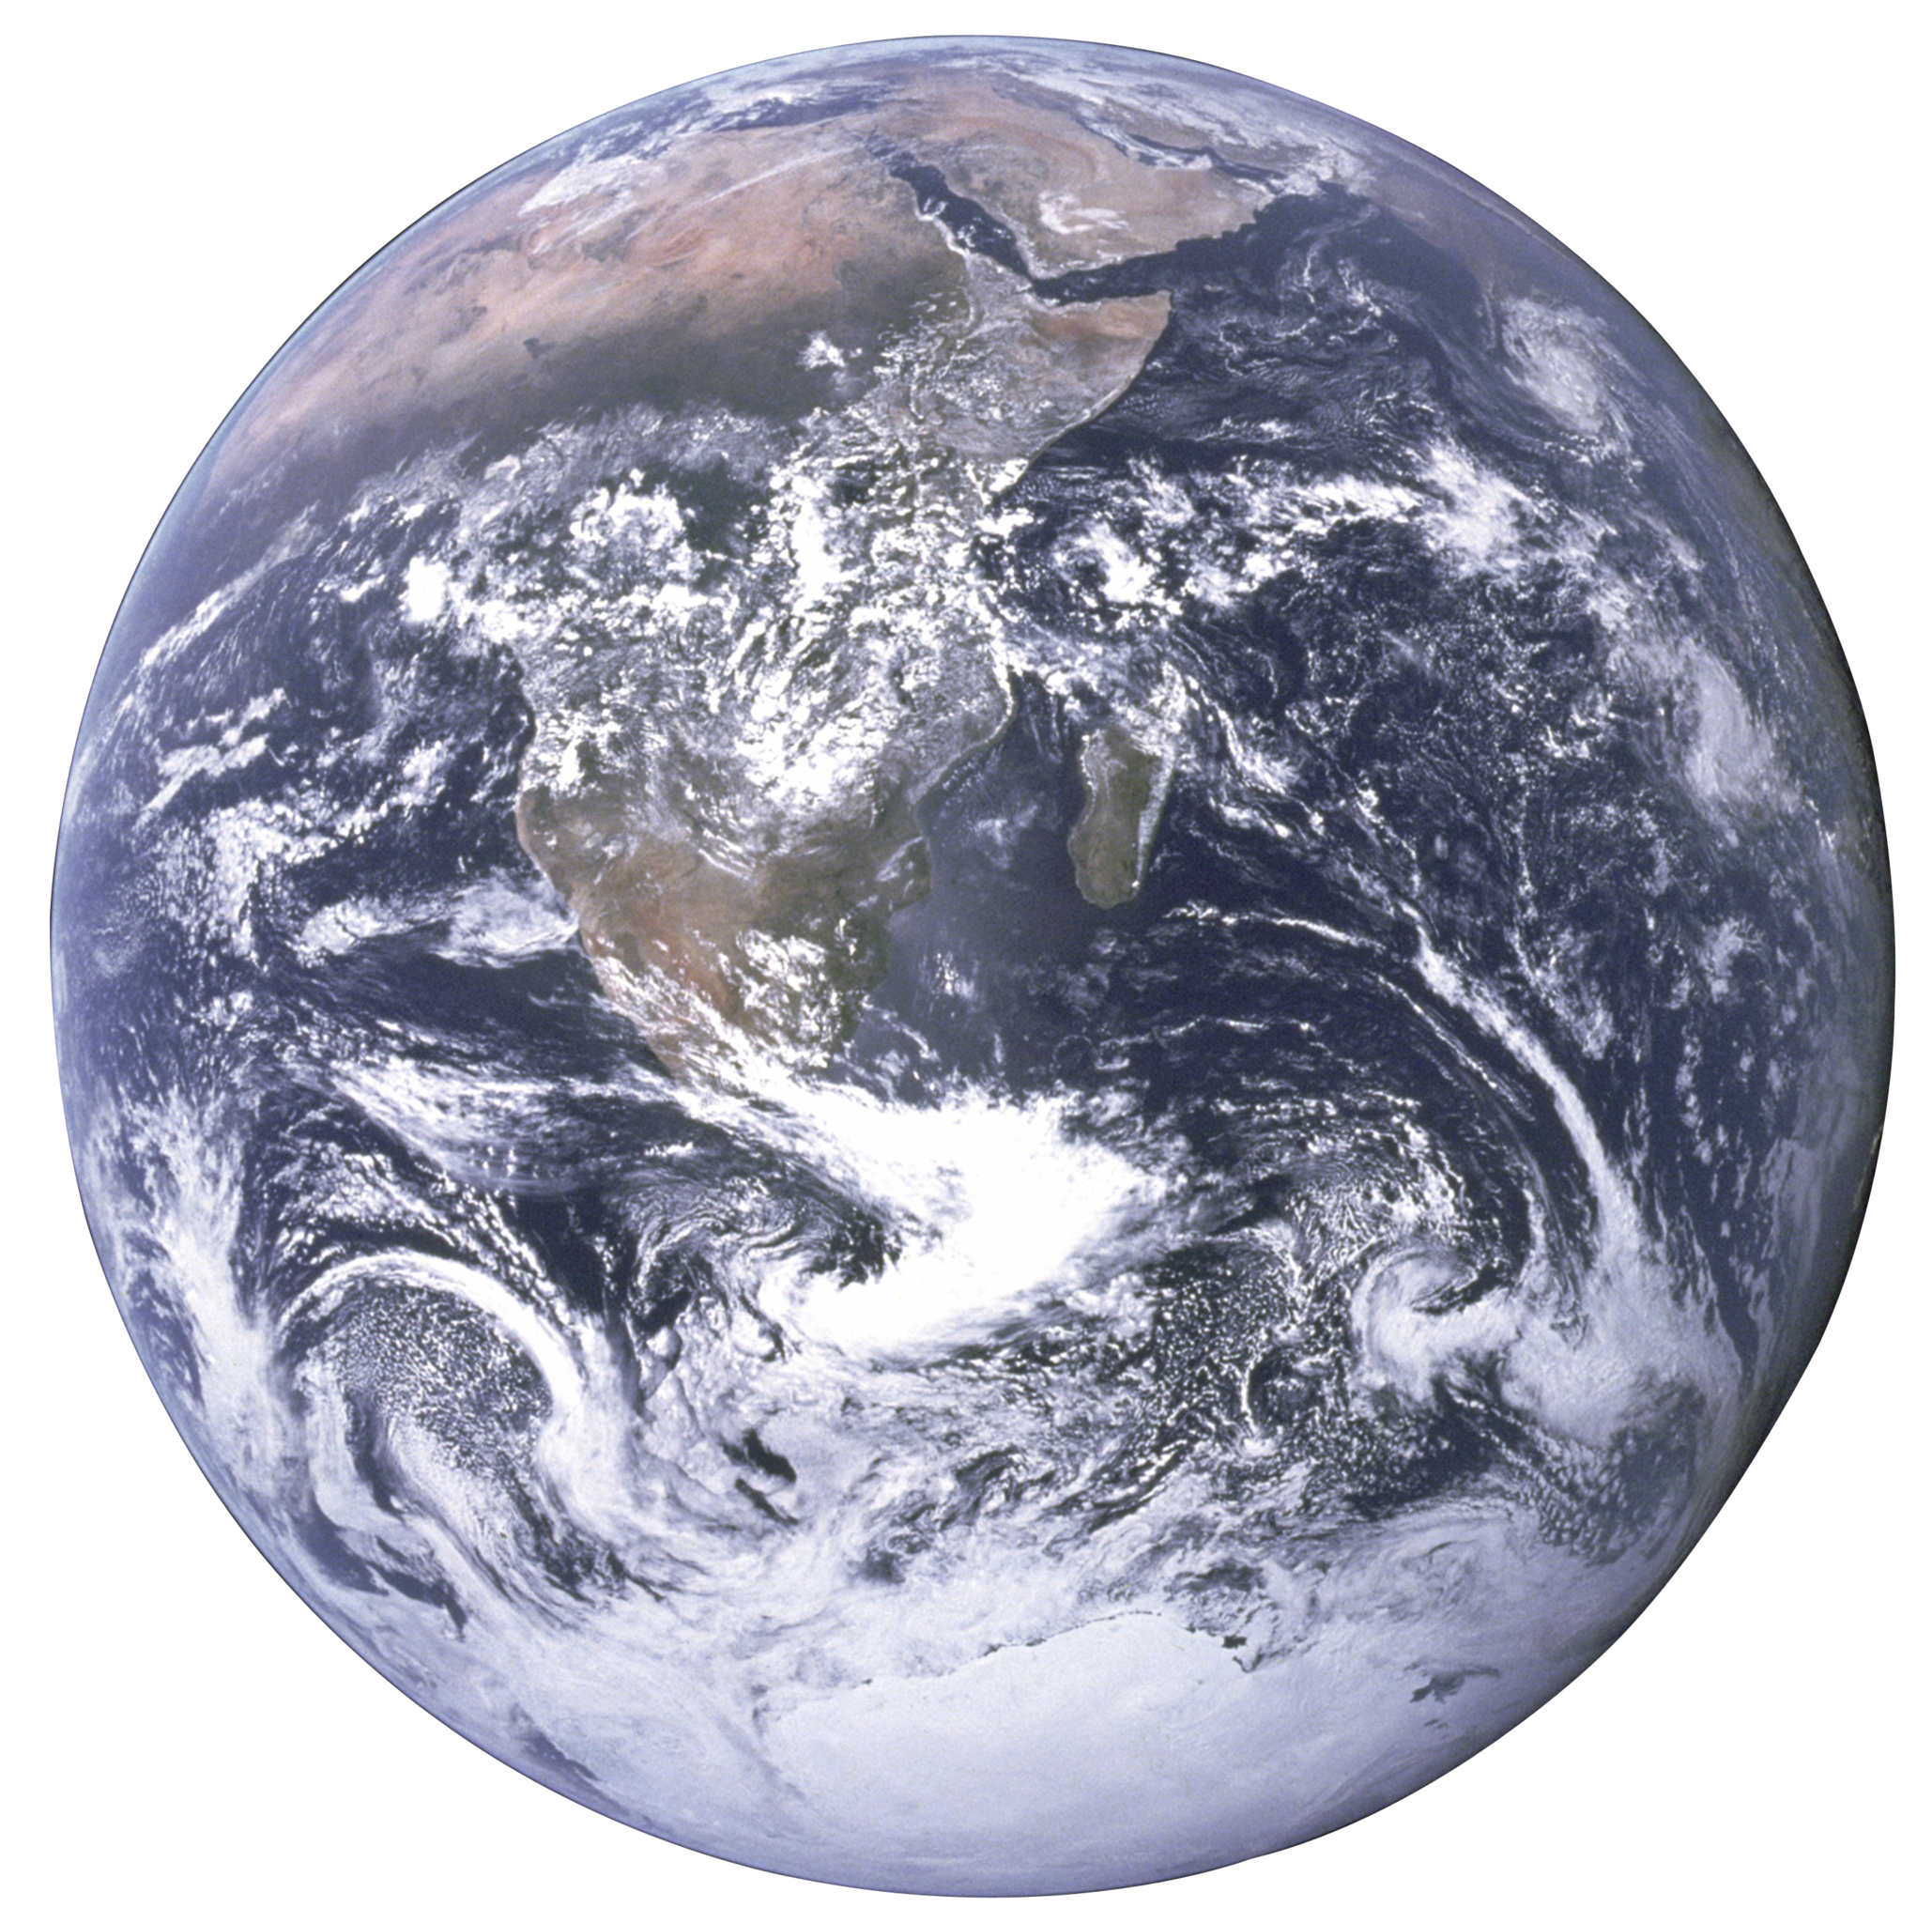 Trái đất nhìn từ Apollo 17 với nền trong suốt là một tác phẩm nghệ thuật tuyệt vời, với cách trình bày tinh tế. Cùng chiêm ngưỡng bức tranh rực rỡ nhưng cũng đầy tinh tế này trên tập tin PNG được lưu trữ trên nền tảng trực tuyến.